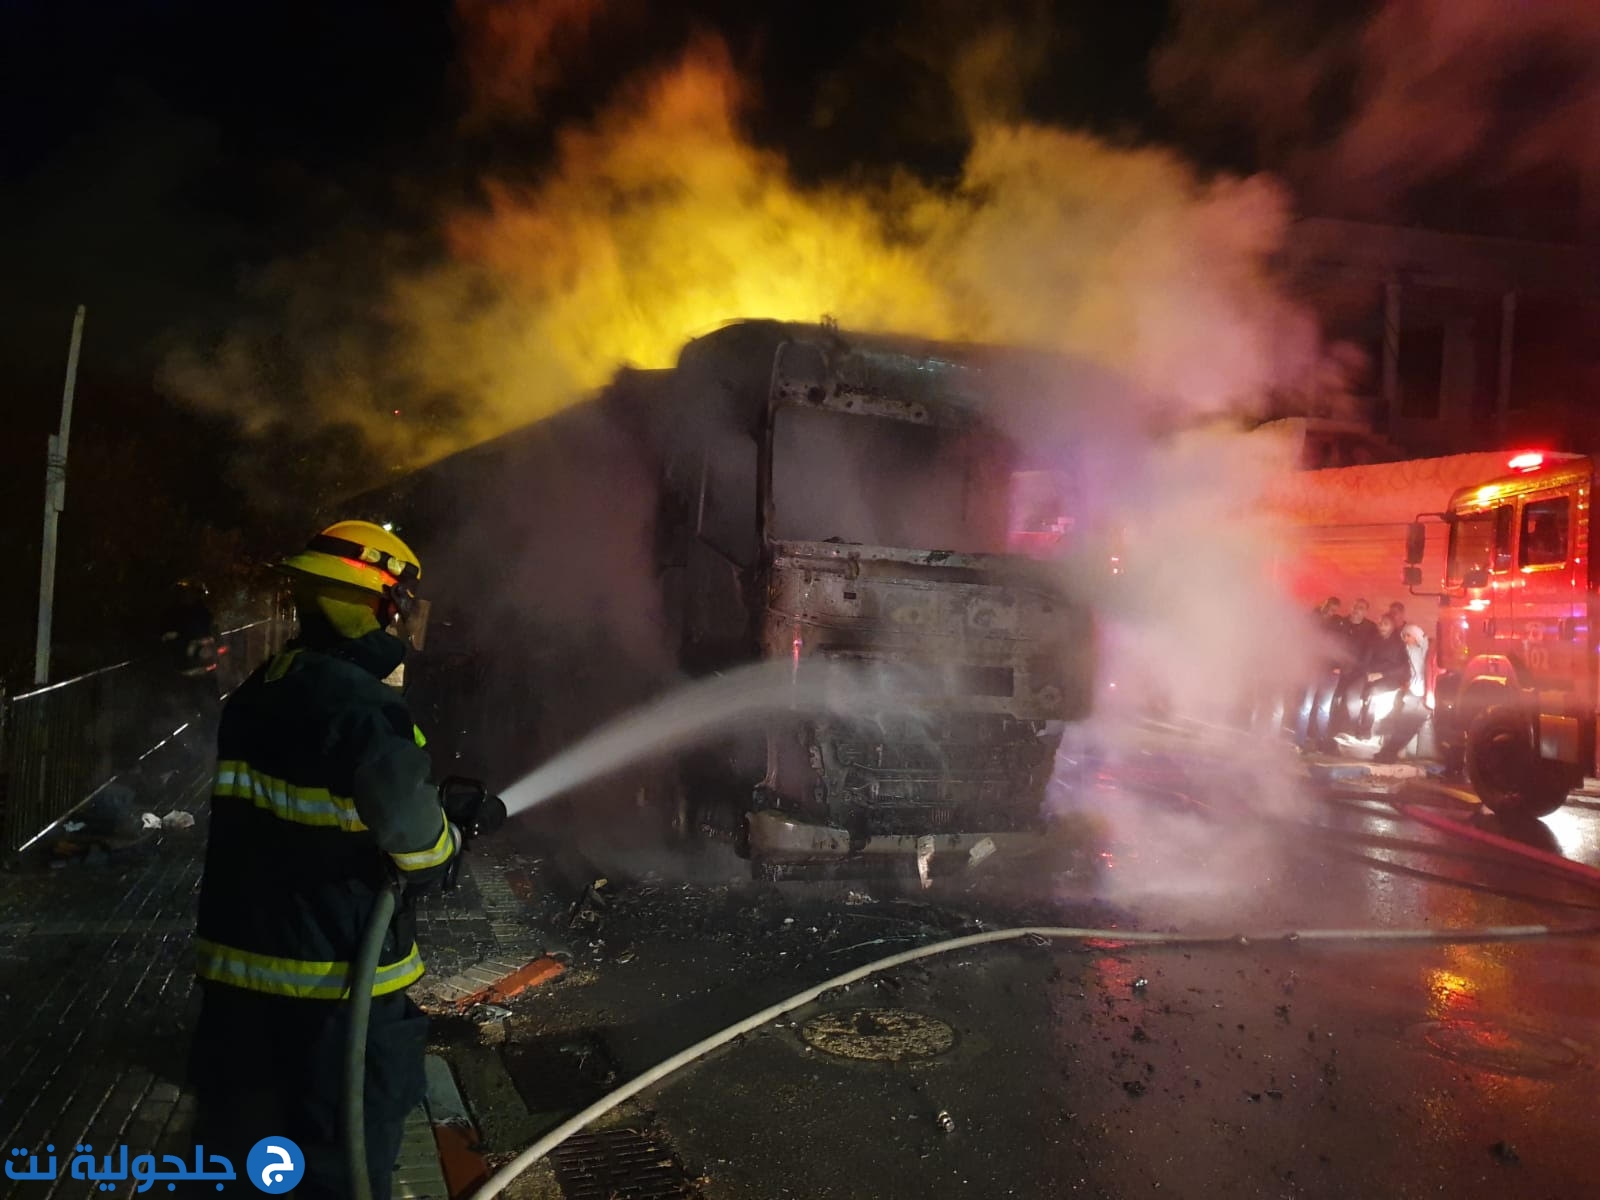 حريق كبير داخل شاحنة في بسمة طبعون يلحق أضرار مادية جسيمة